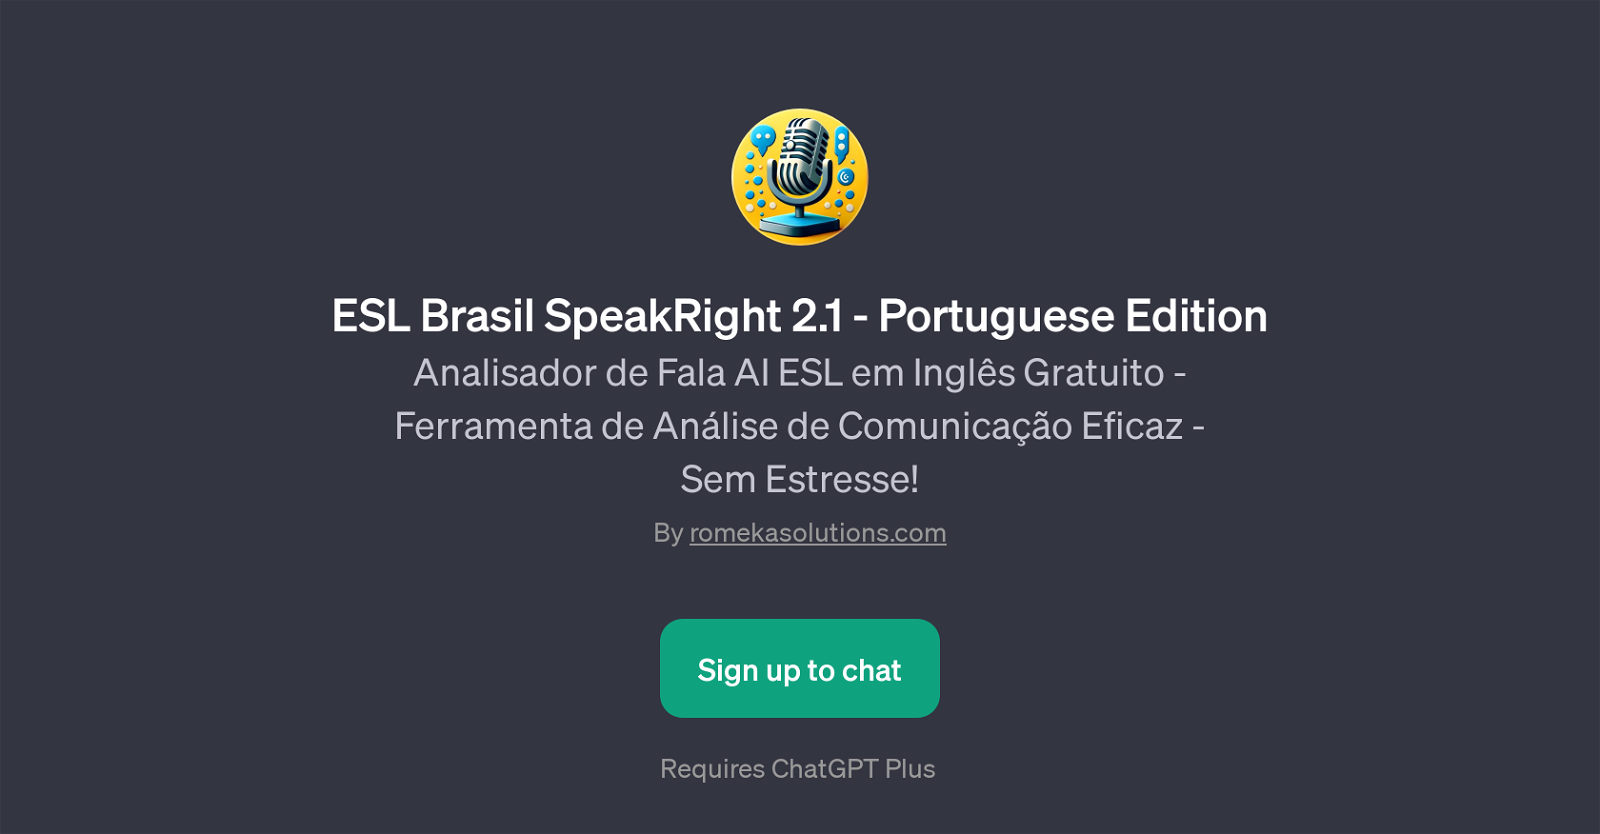 ESL Brasil SpeakRight 2.1 - Portuguese Edition website